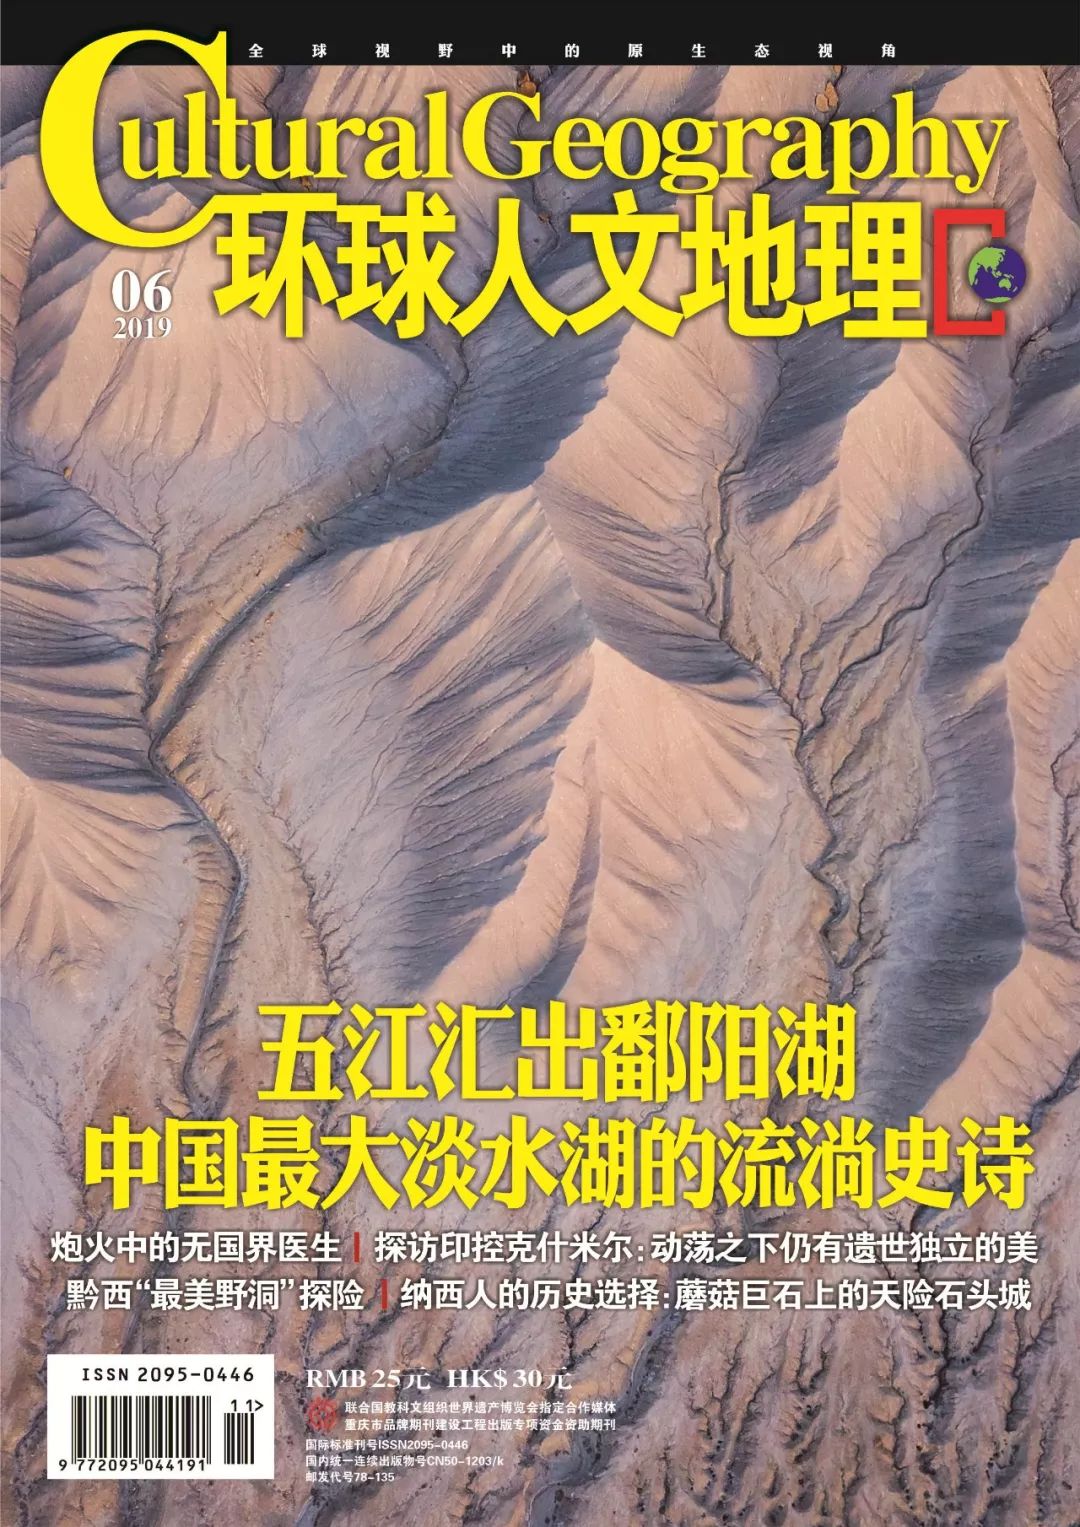 新刊丨 環球人文地理 19年6月號目錄 環球人文地理 微文庫